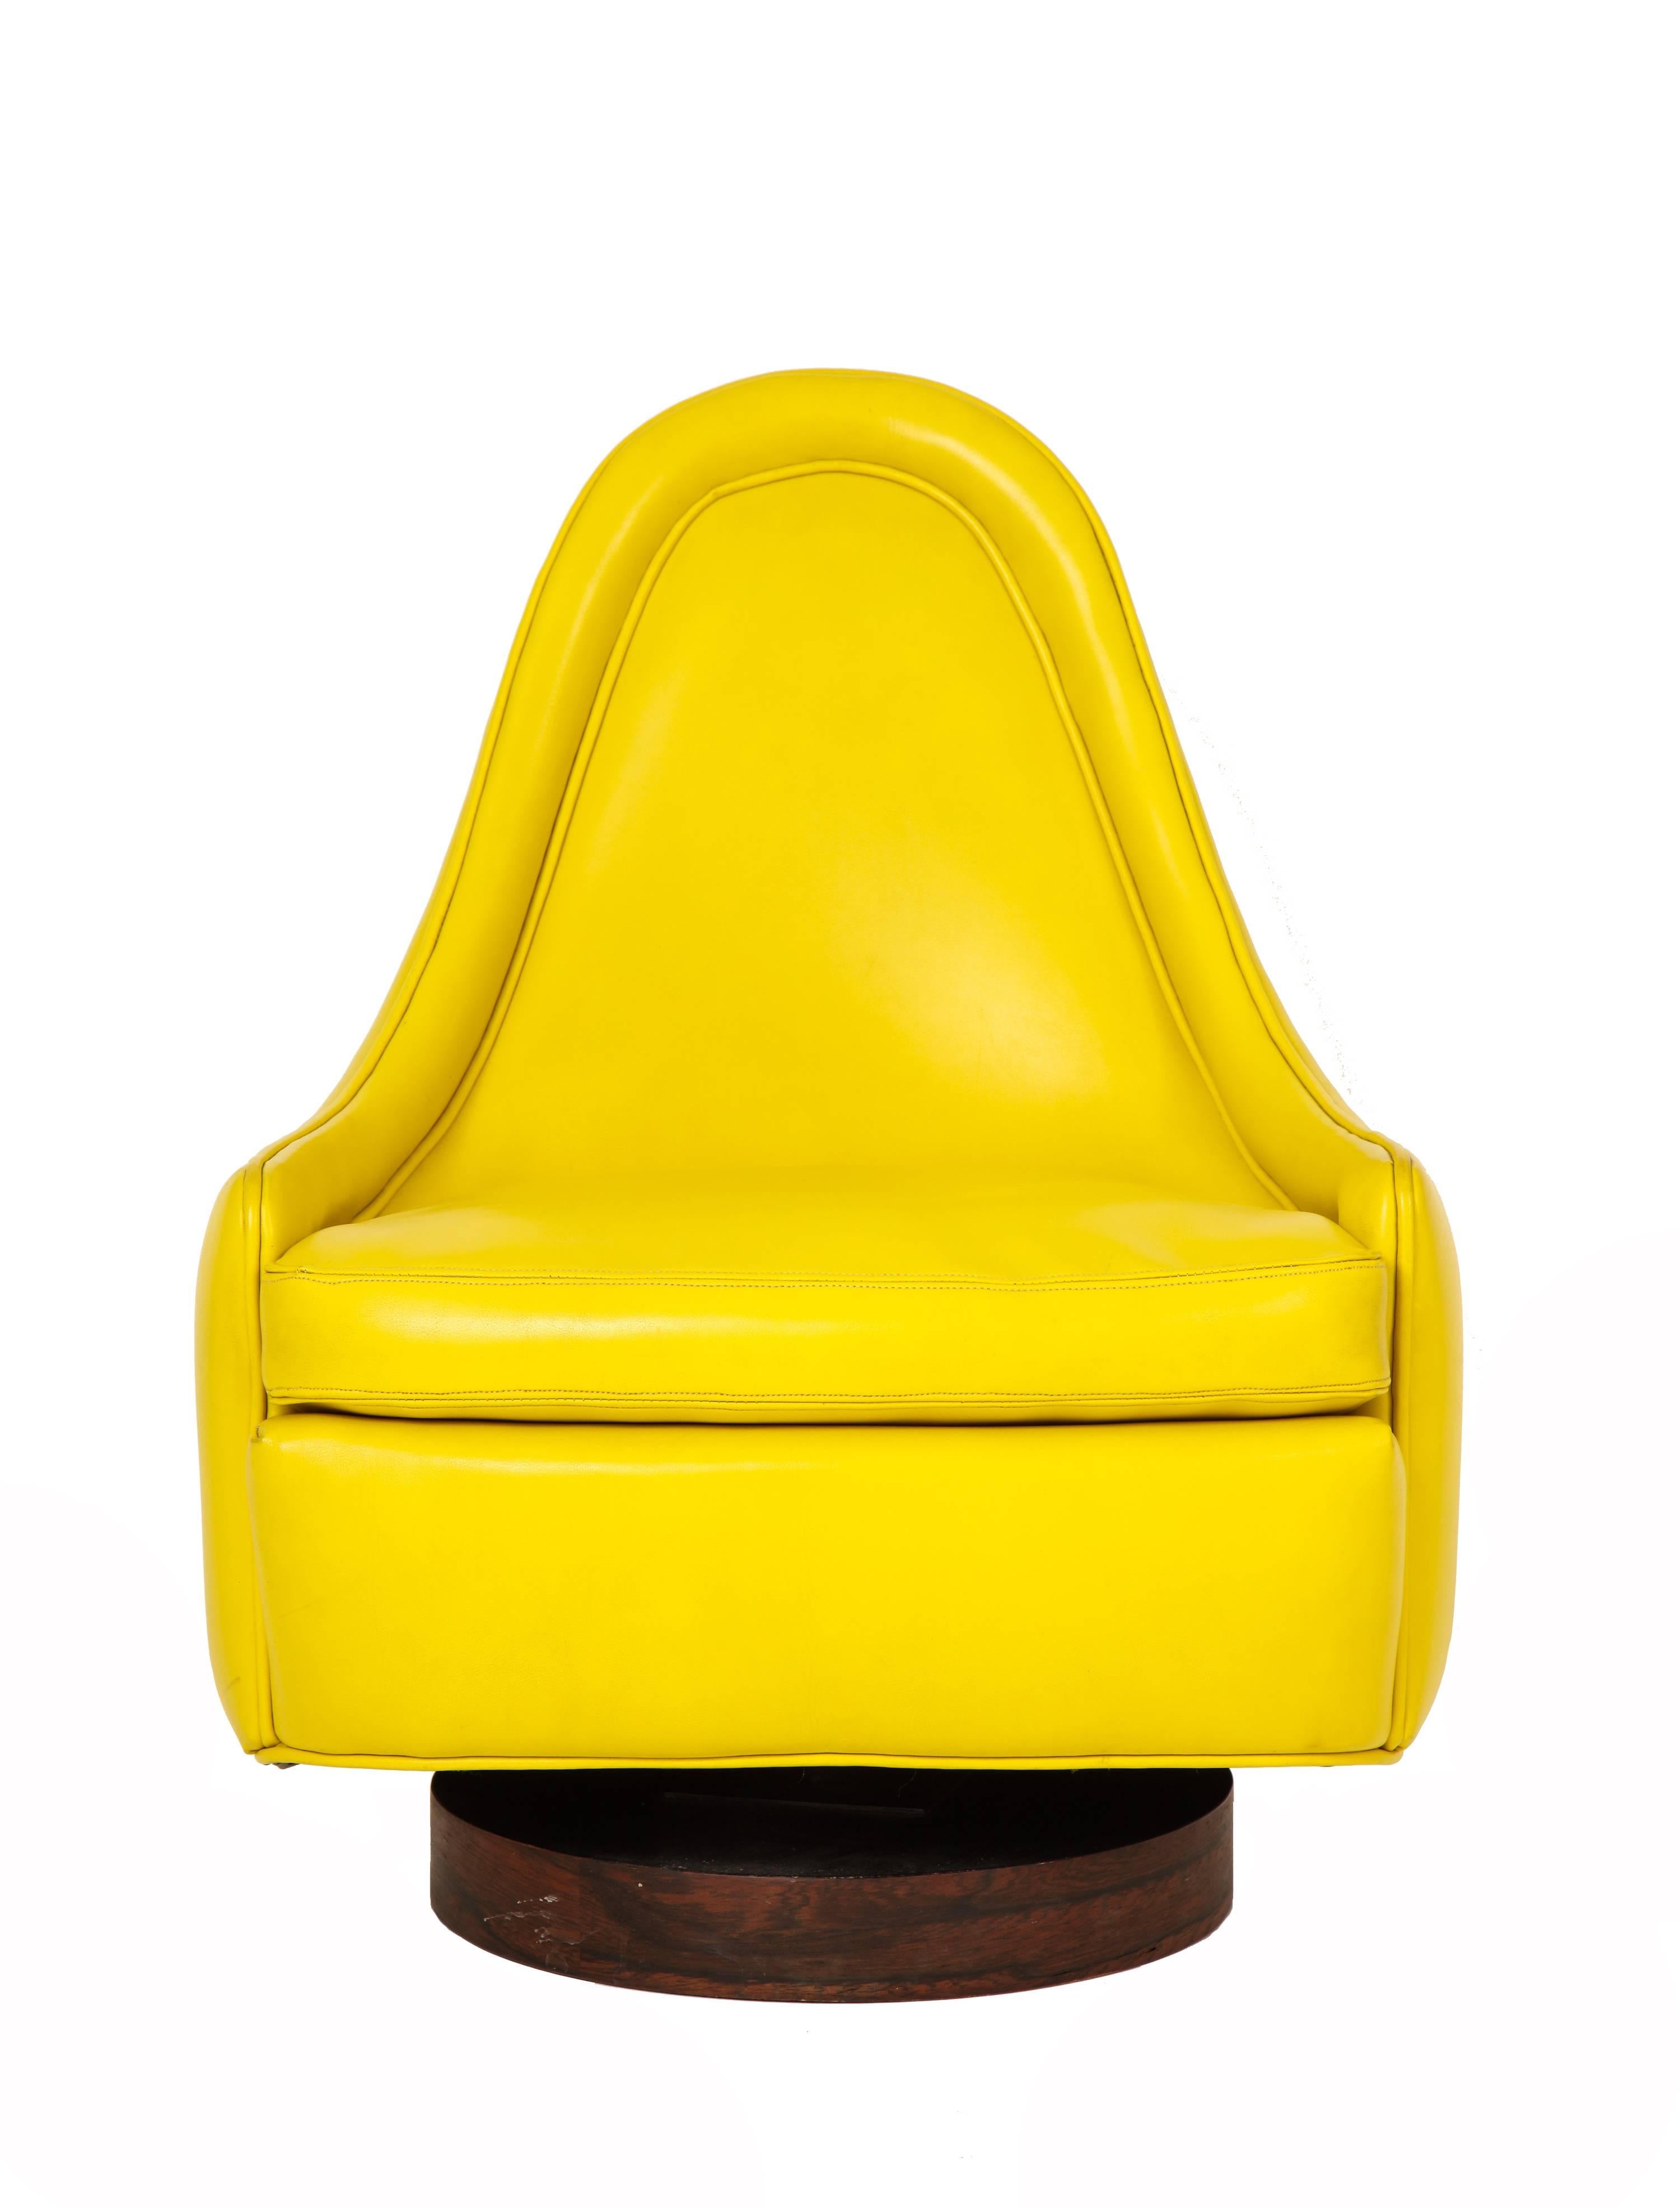 yellow modern chair